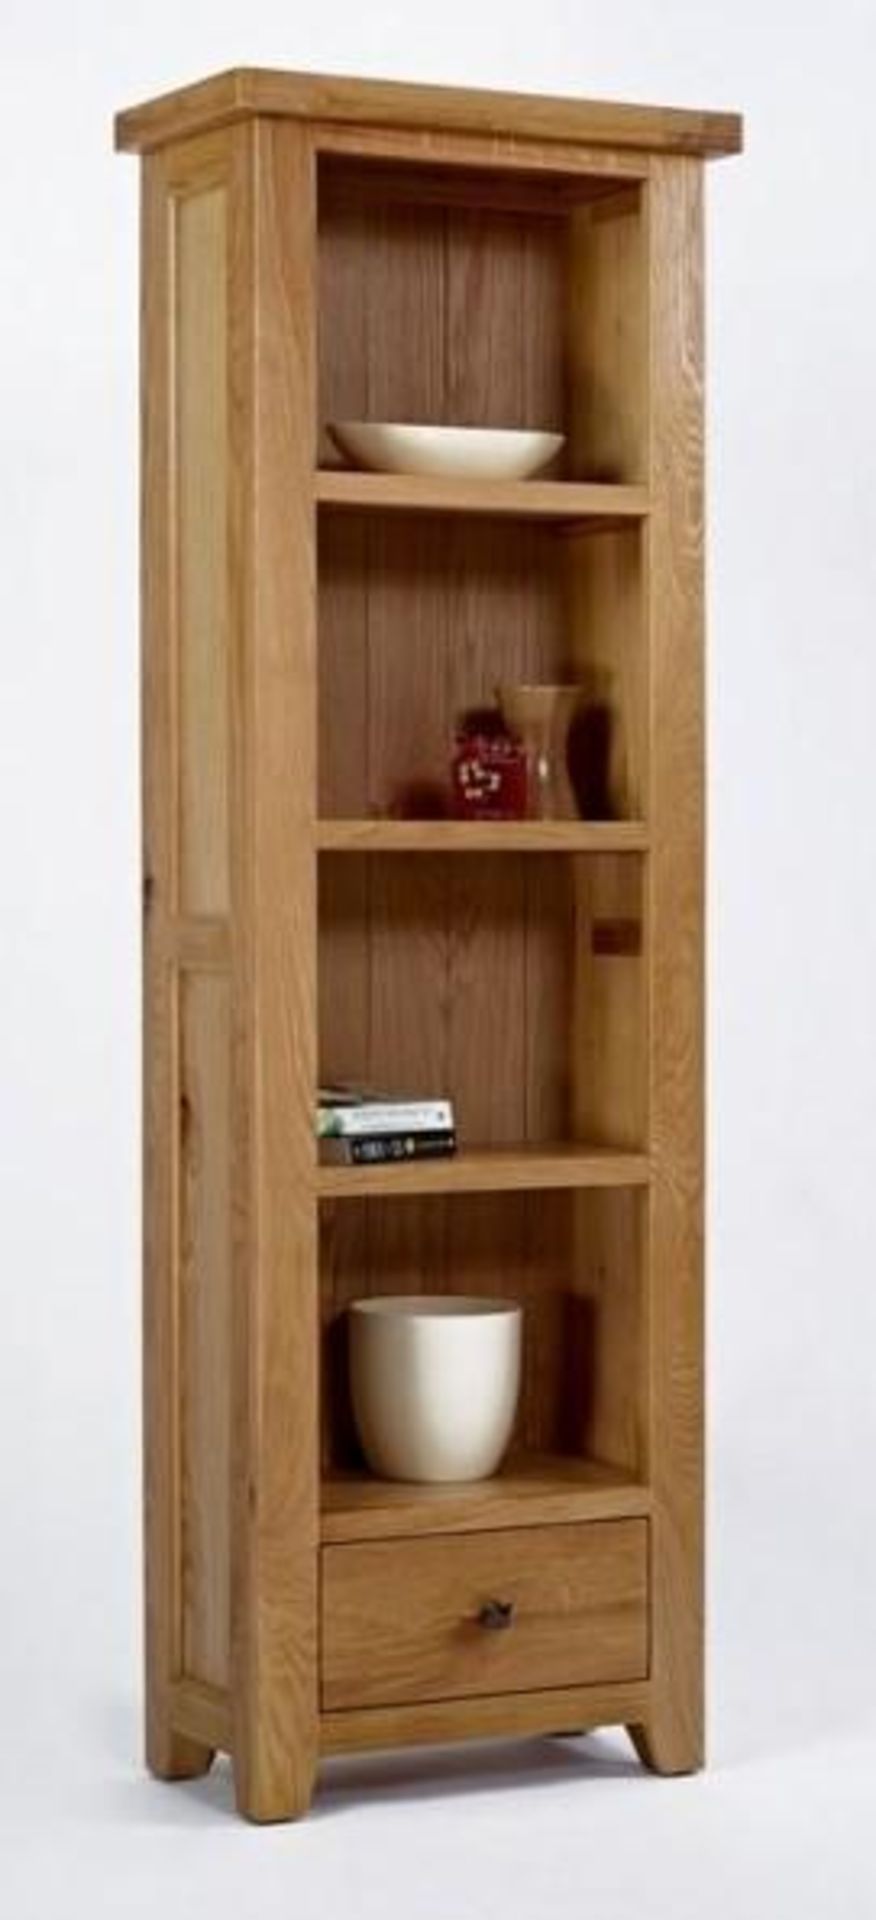 BRAND NEW & BOXED Devon oak tall bookcase